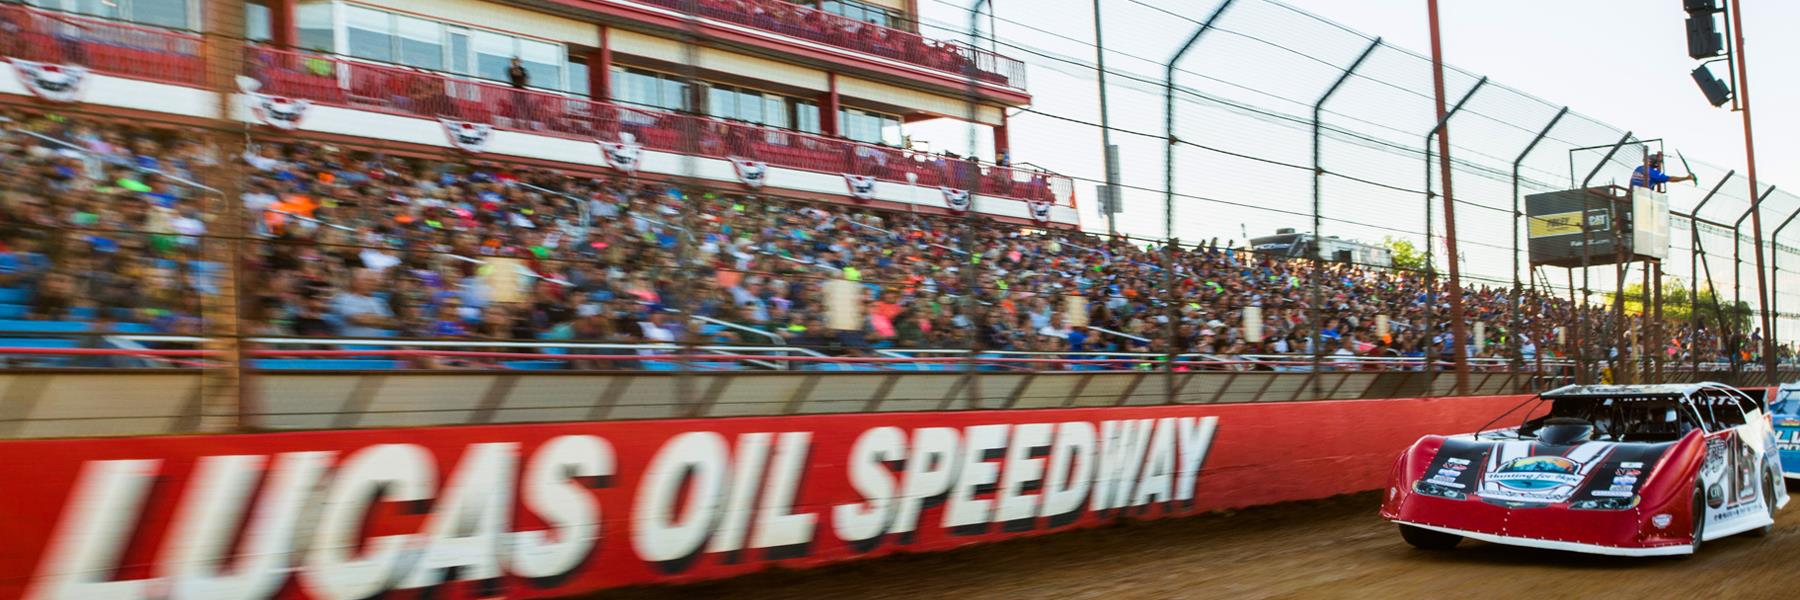 7/12/2014 - Lucas Oil Speedway